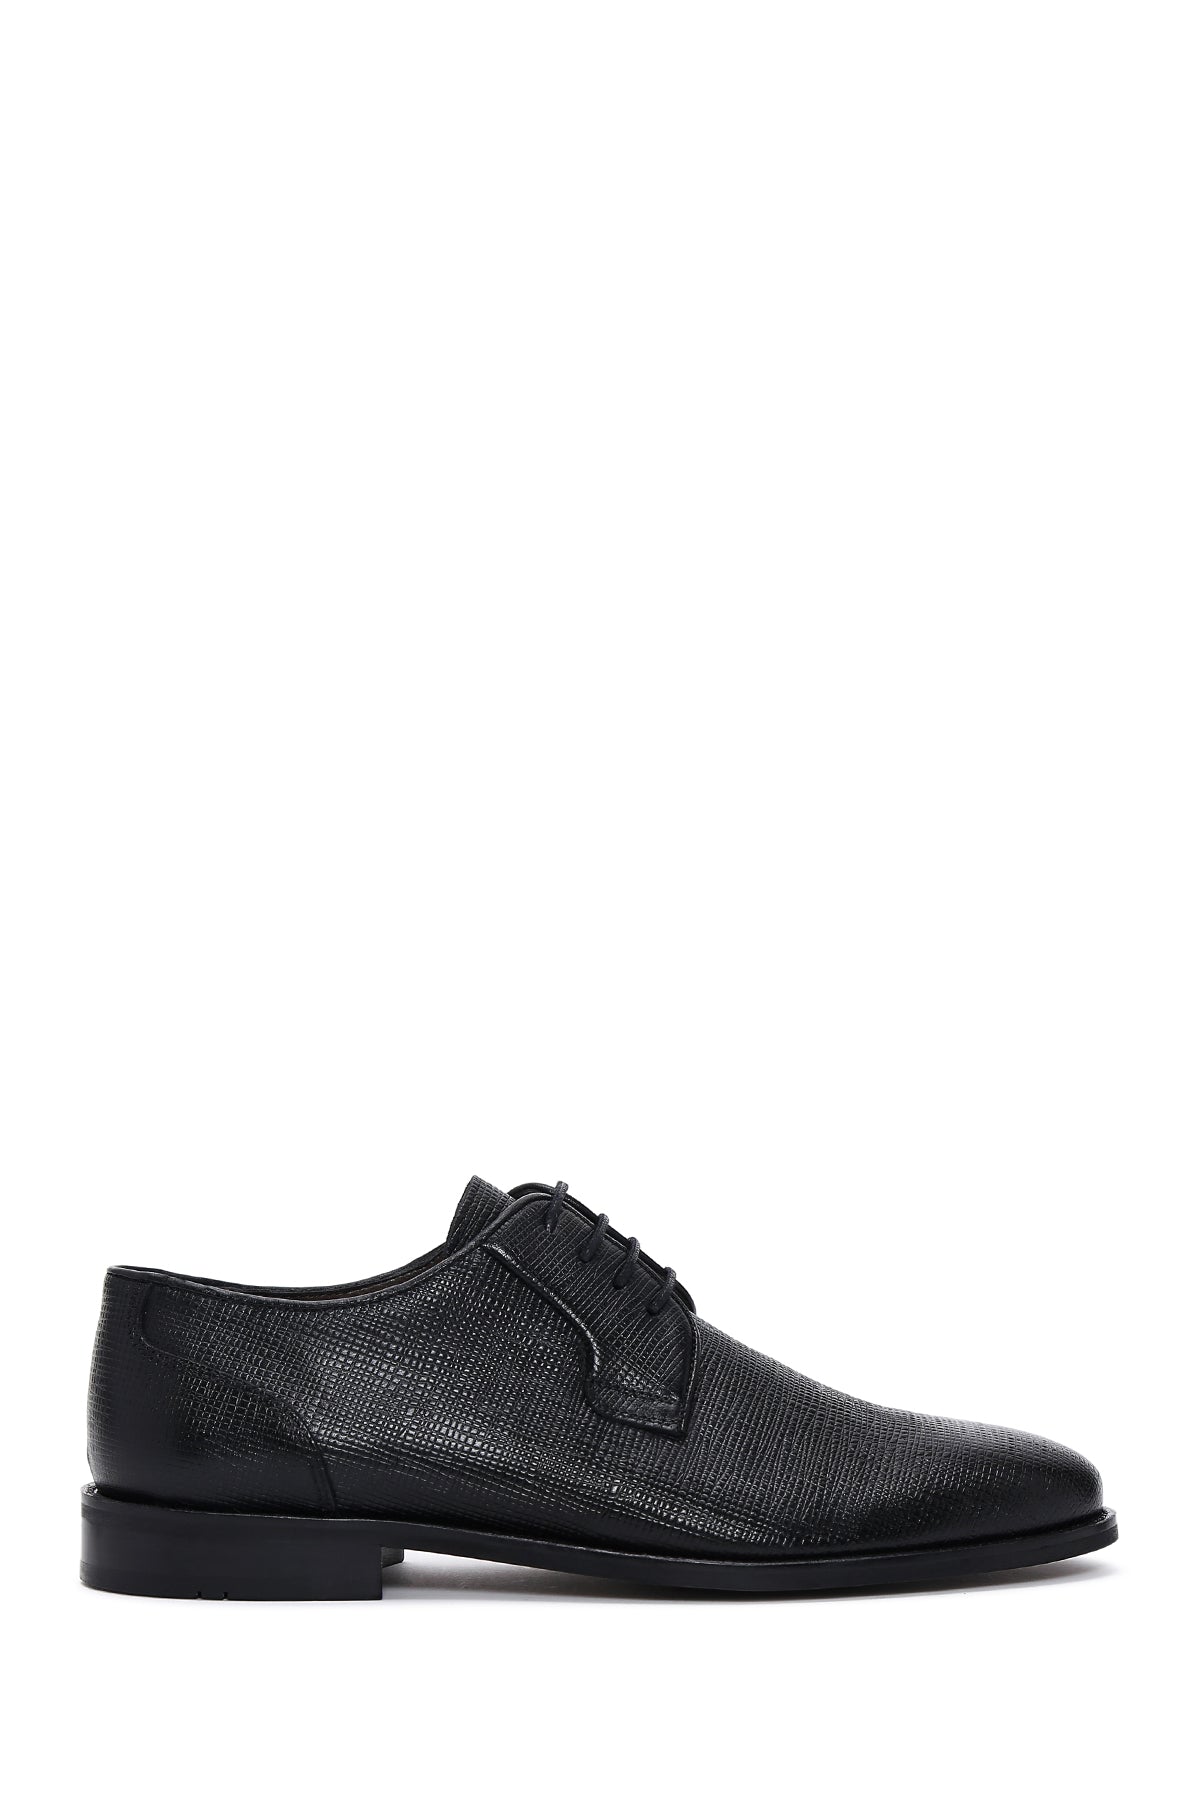 Erkek Siyah Deri Baskılı Klasik Ayakkabı